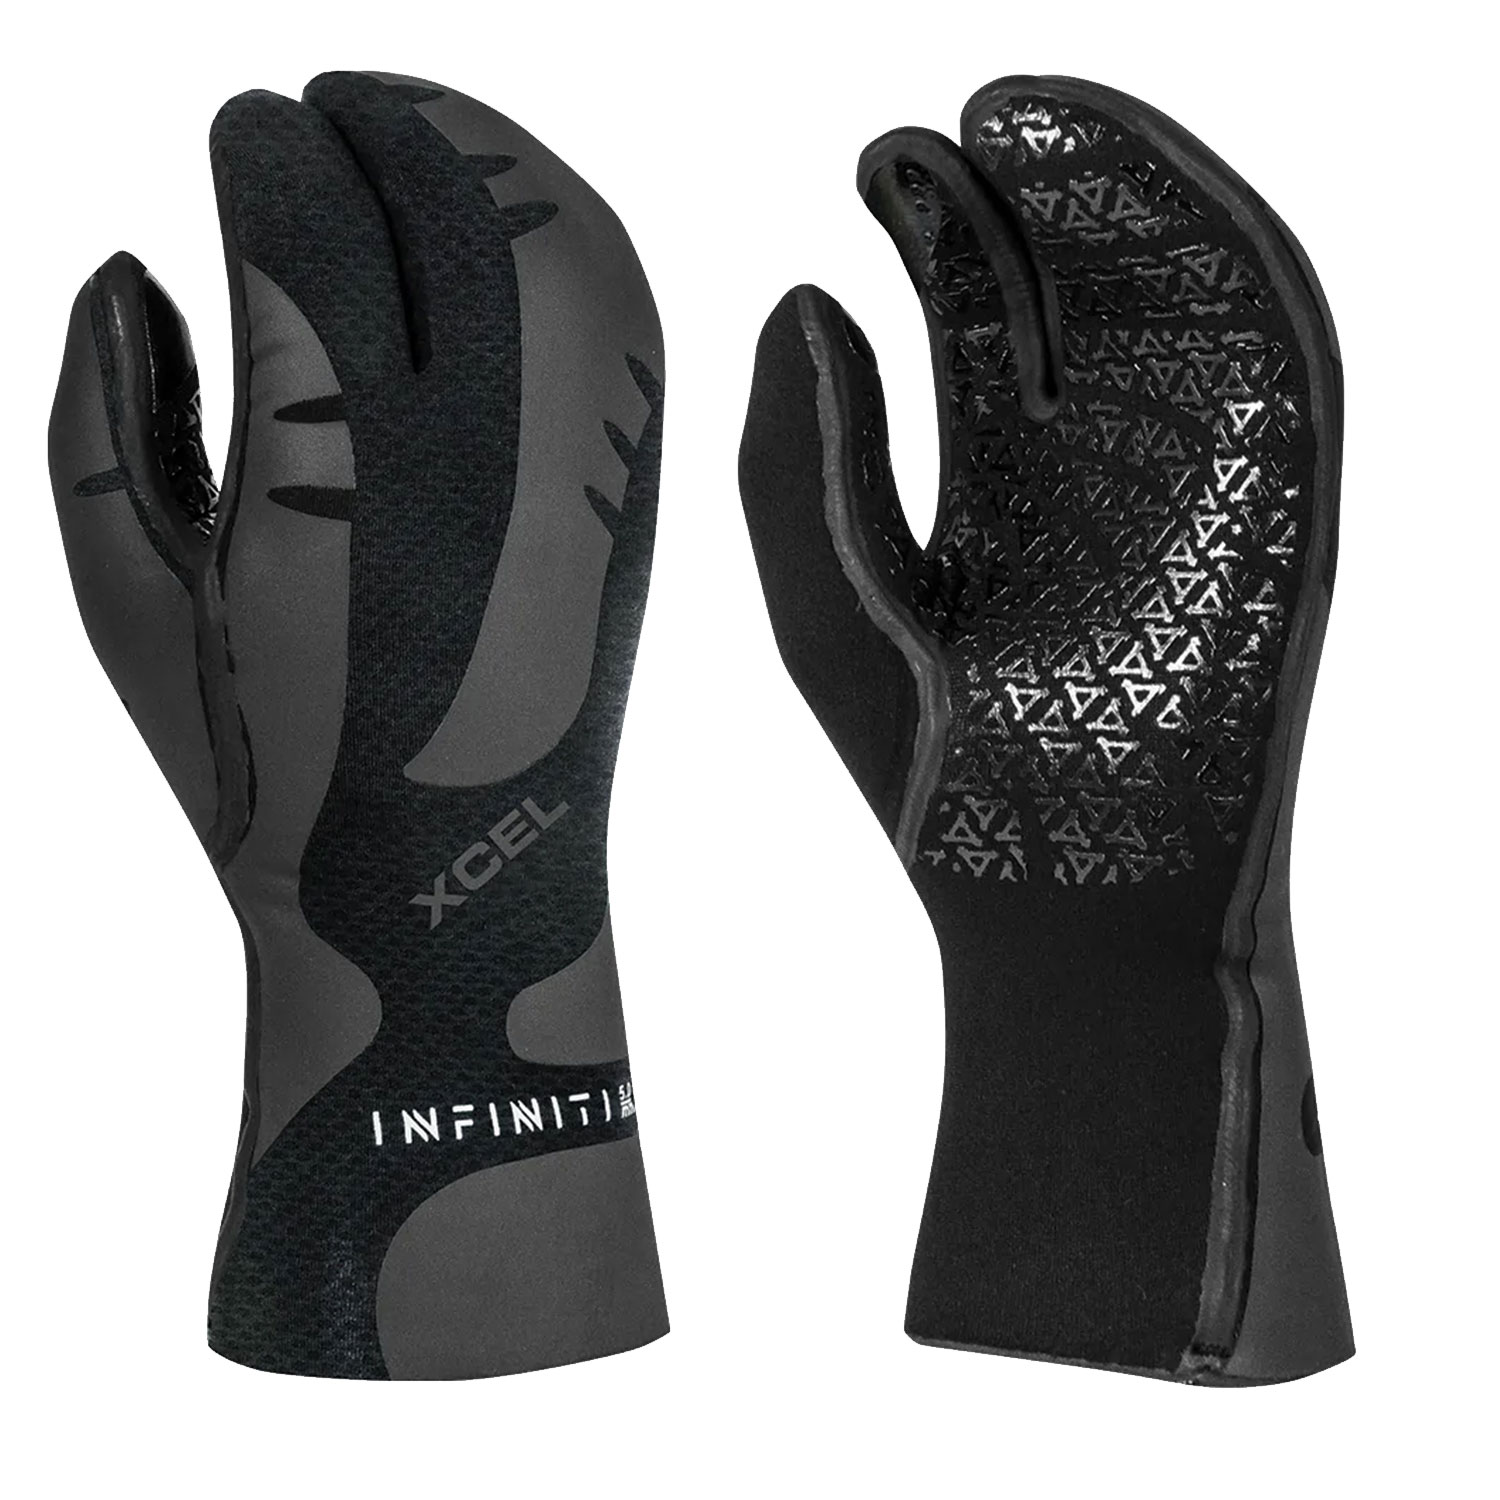 5mm-Infiniti-3-Finger-Glove